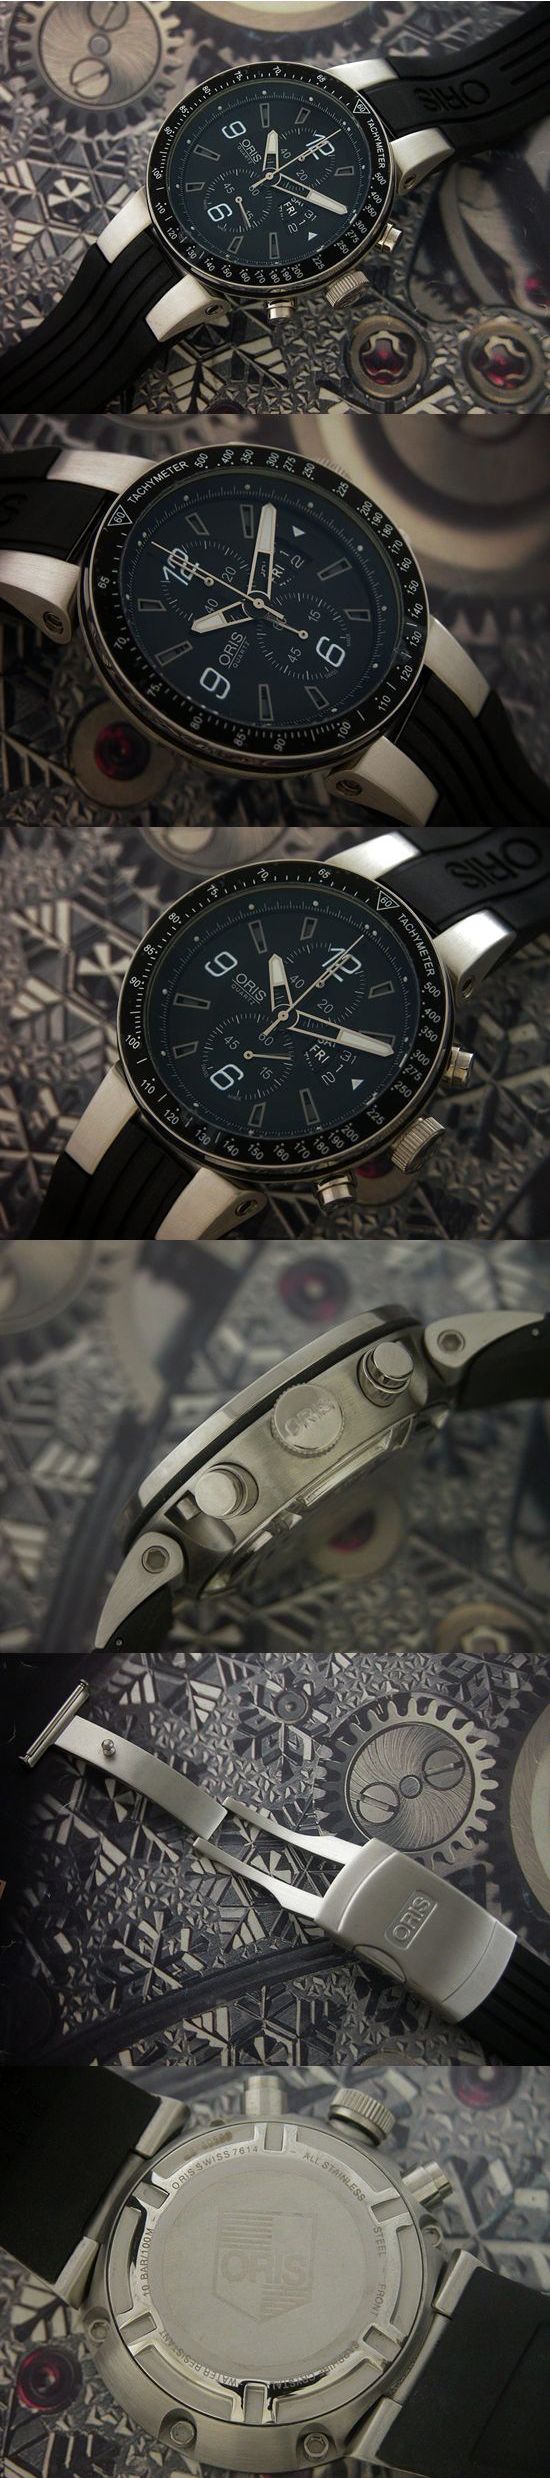 おしゃれなブランド時計がオリス-ウィリアムズ-ORIS-01 679 7614 4164-ae-男性用を提供します.